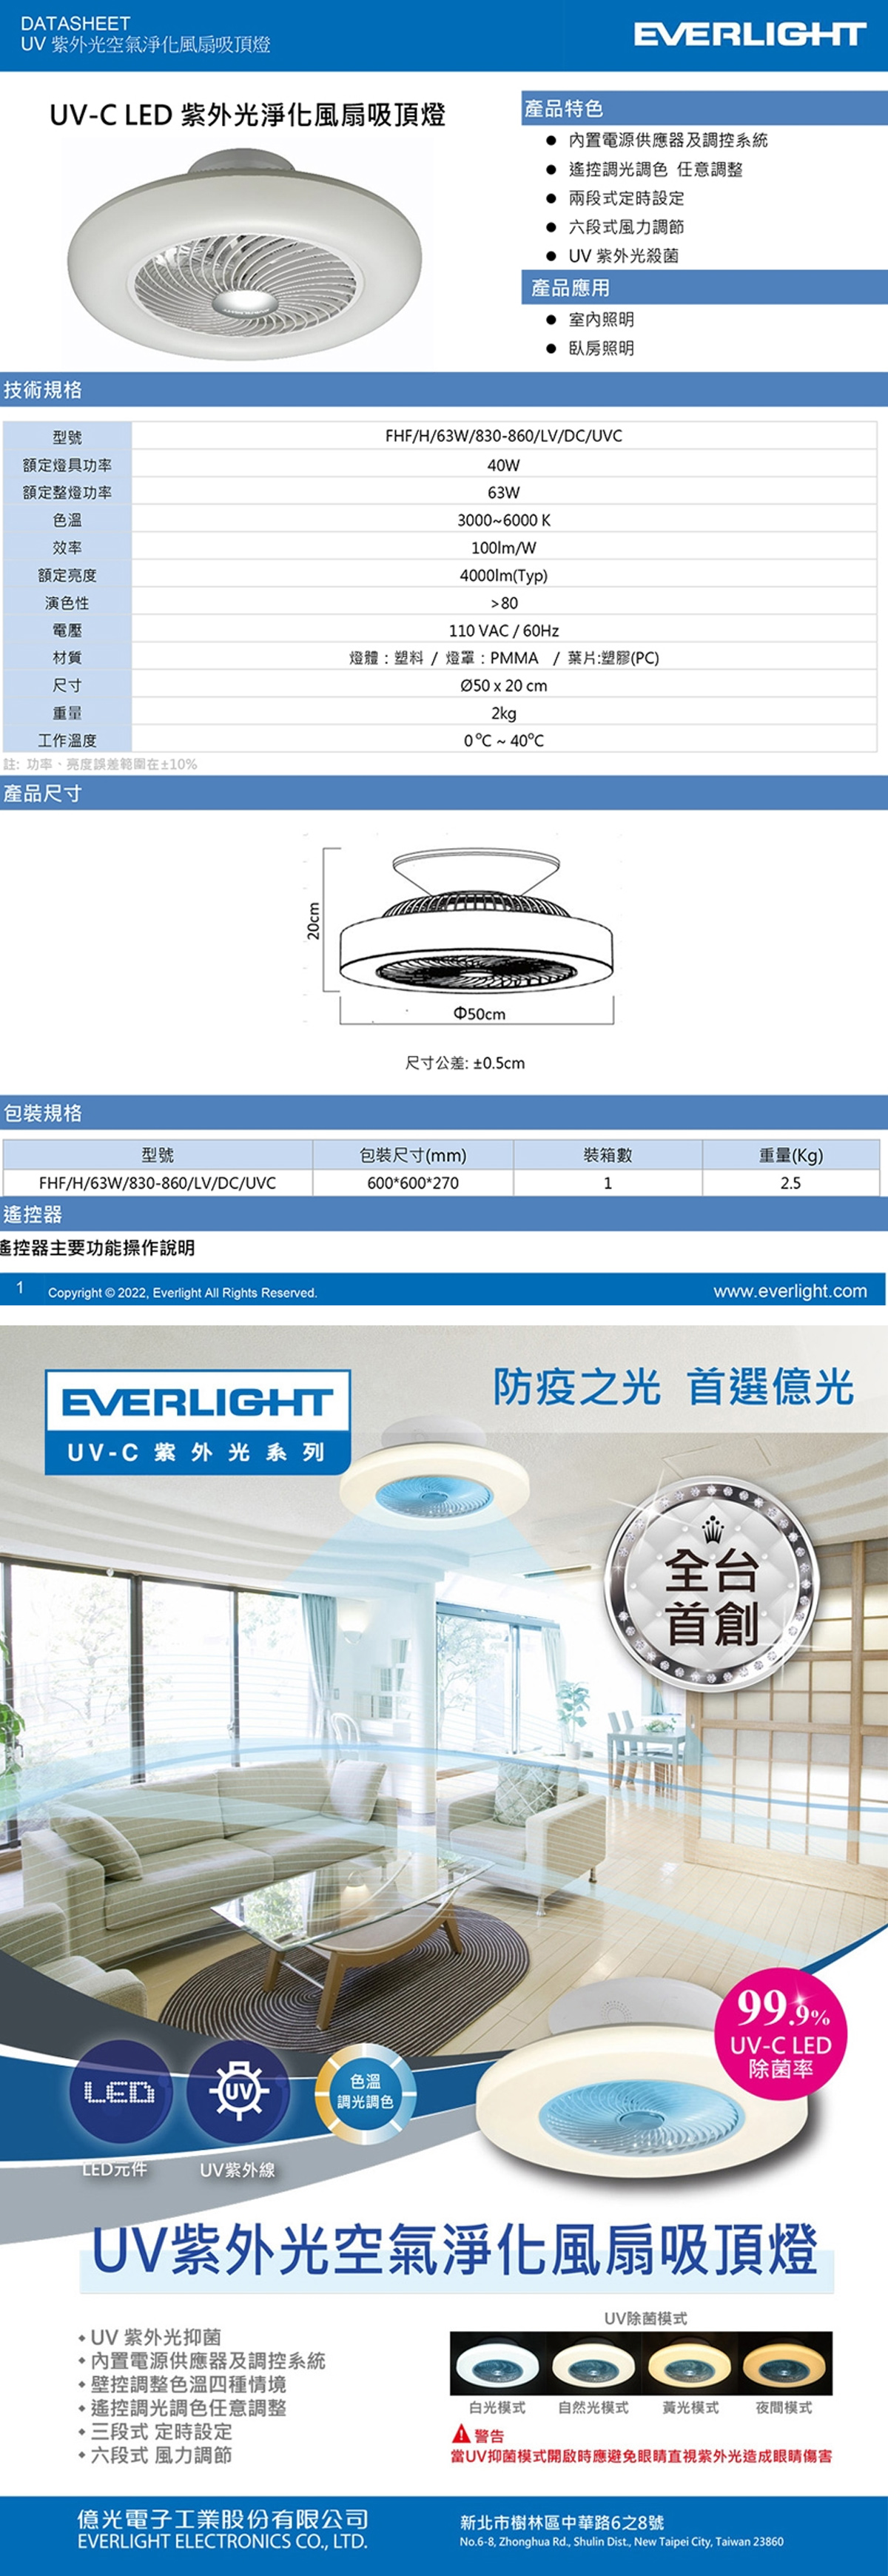 【億光】LED UV-C 63W 遙控 紫外光空氣淨化風扇吸頂燈 電壓110V